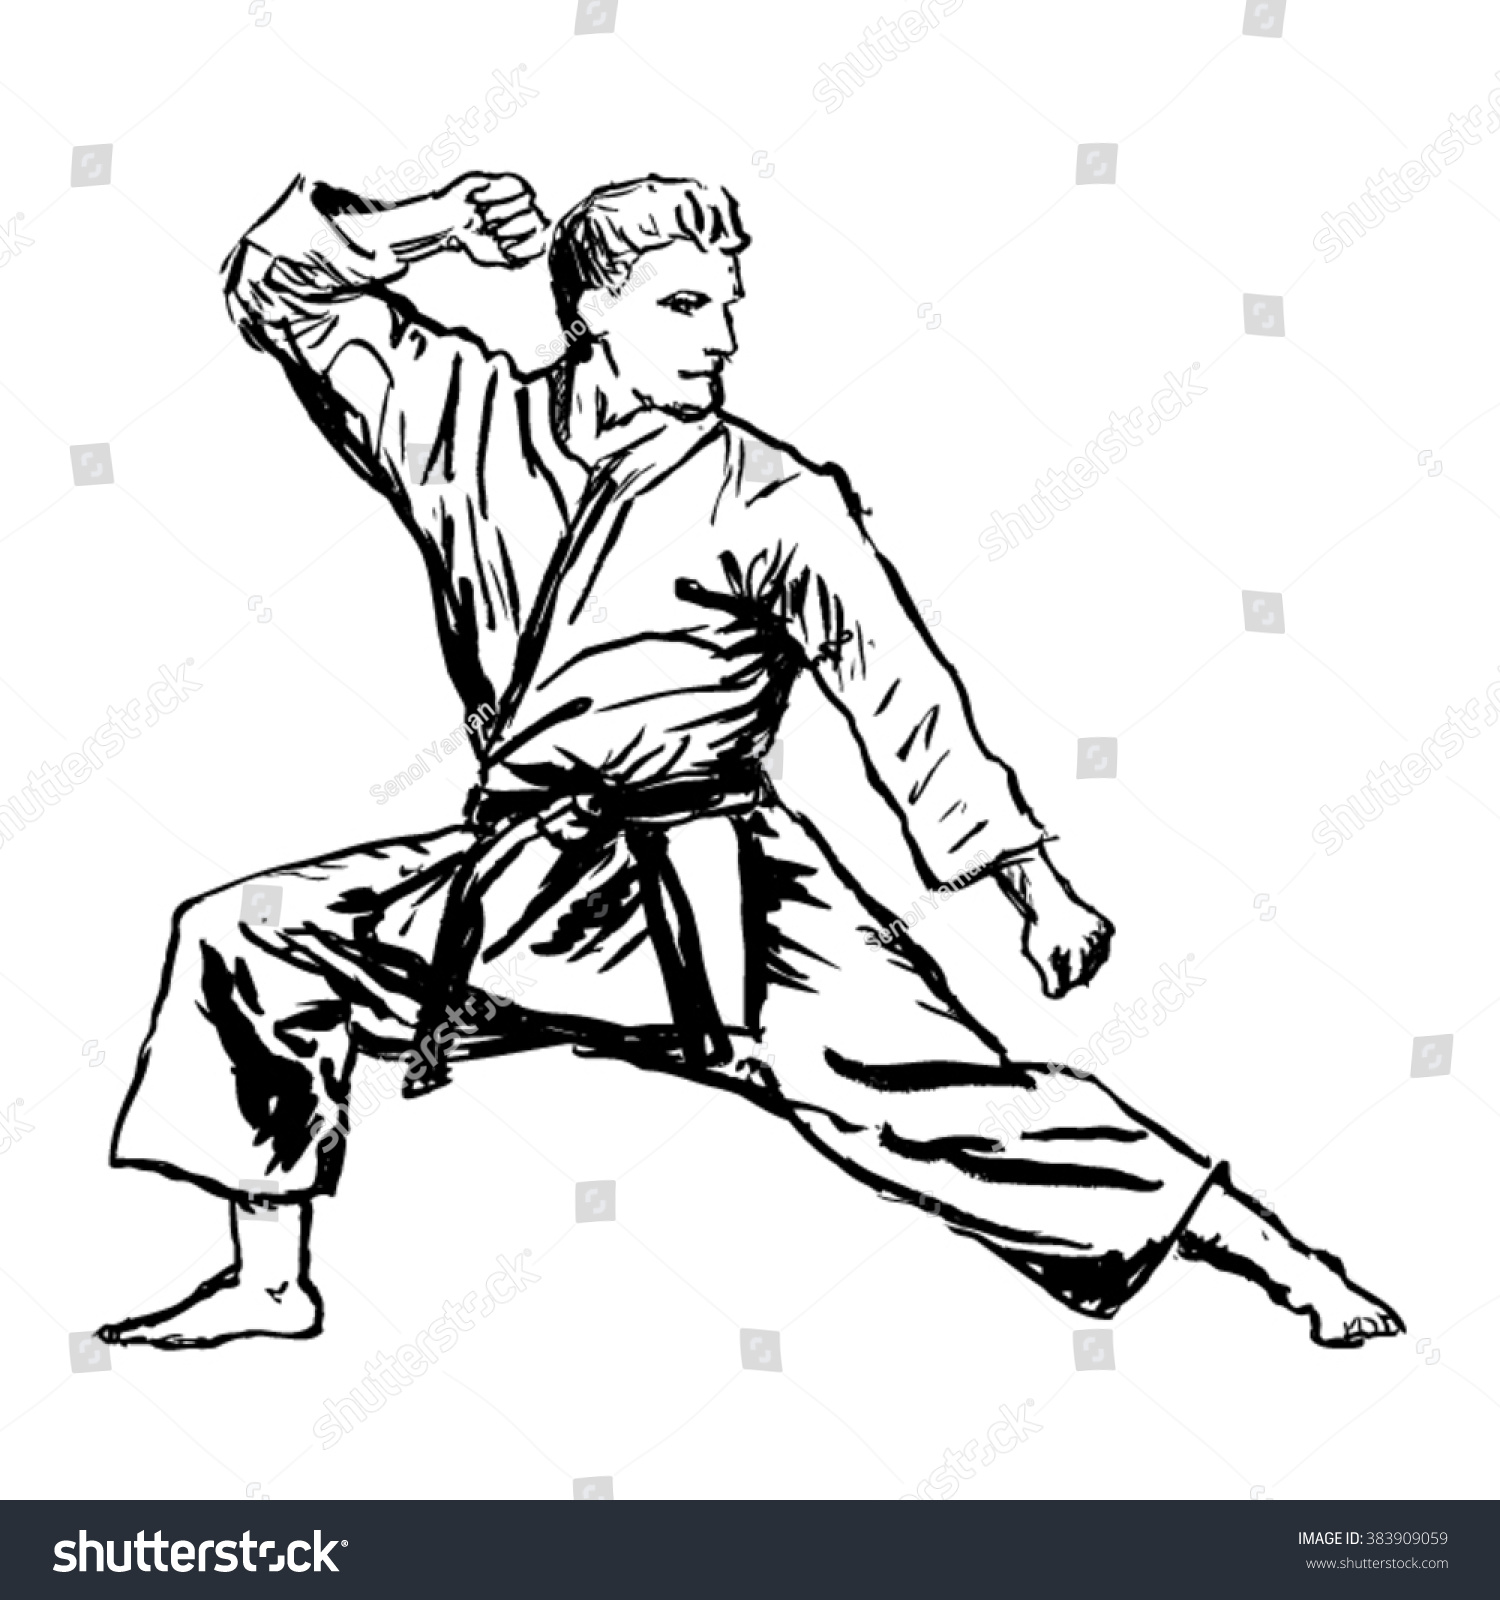 Karate Man Sketch Vector Stock Vector 383909059 - Shutterstock